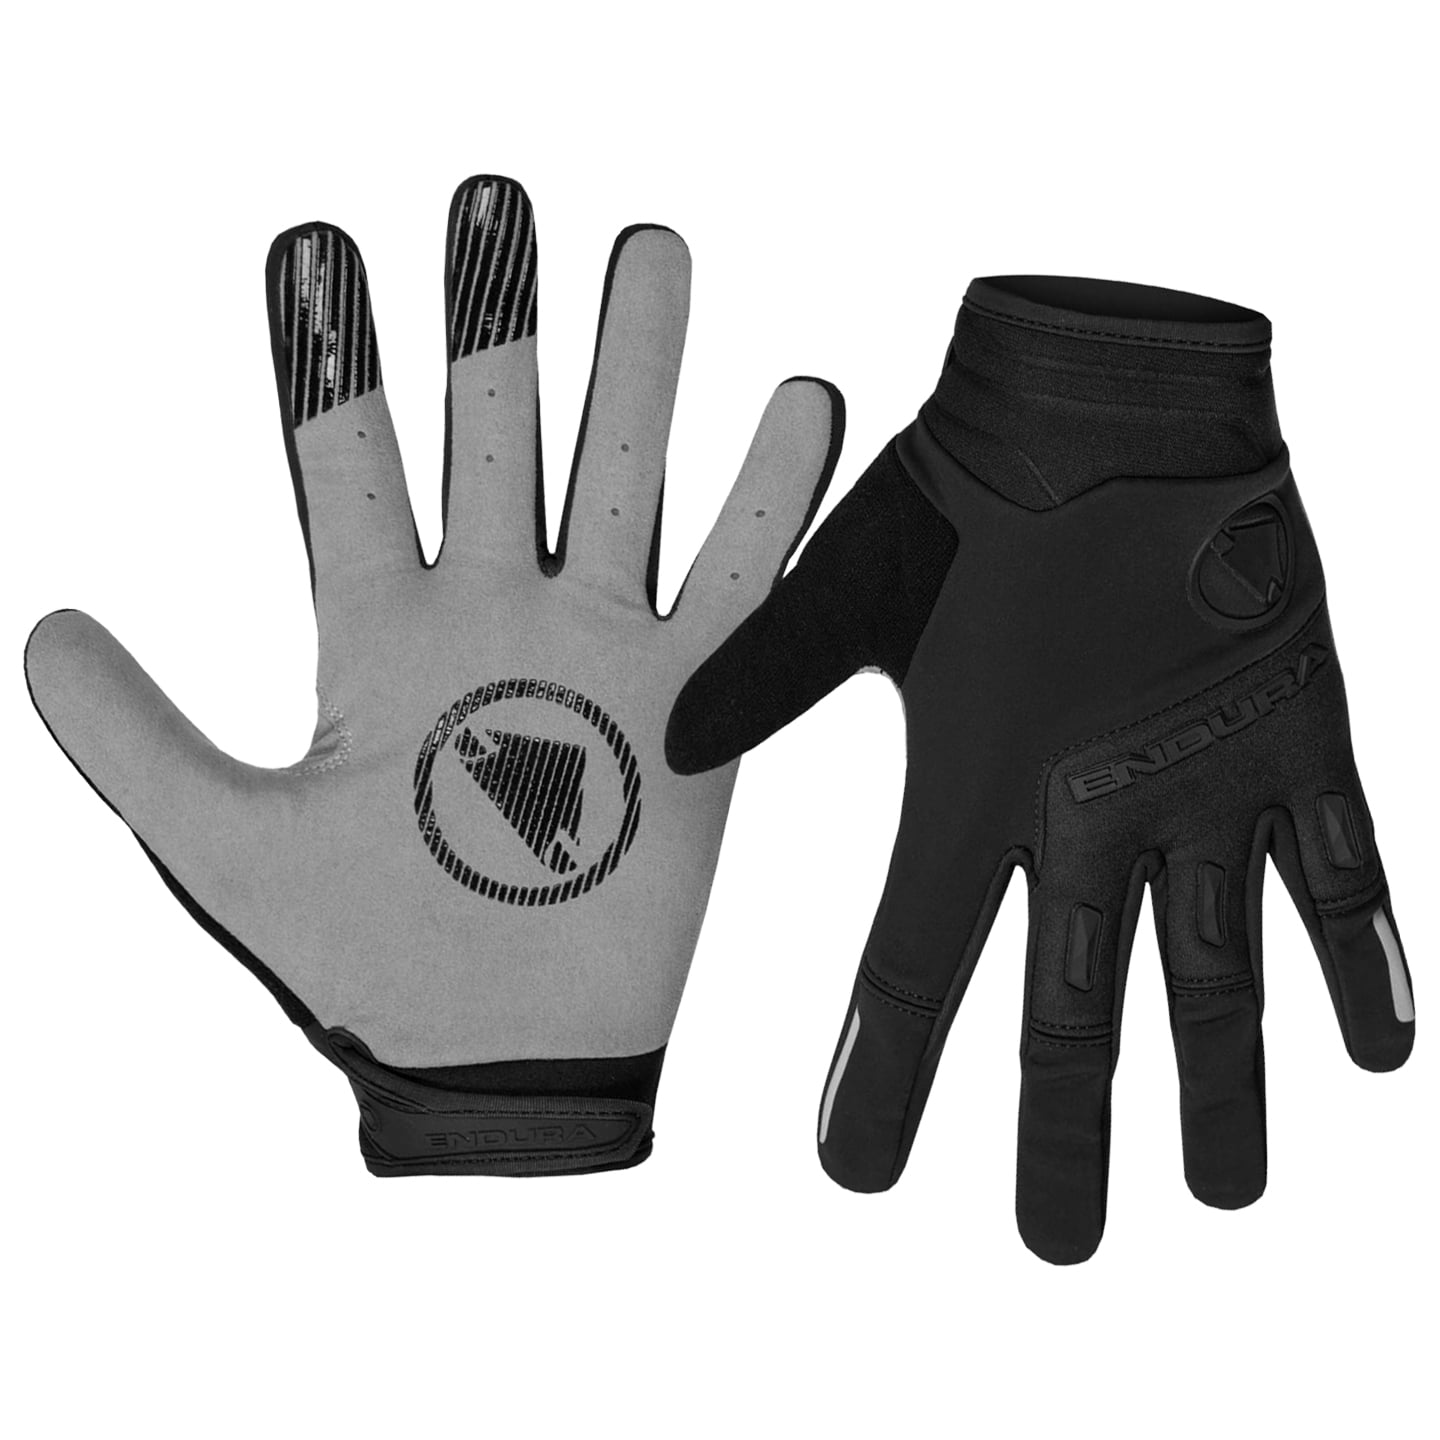 ENDURA Singletrack Winter Gloves Winter Cycling Gloves, for men, size M, Cycling gloves, Cycling gear